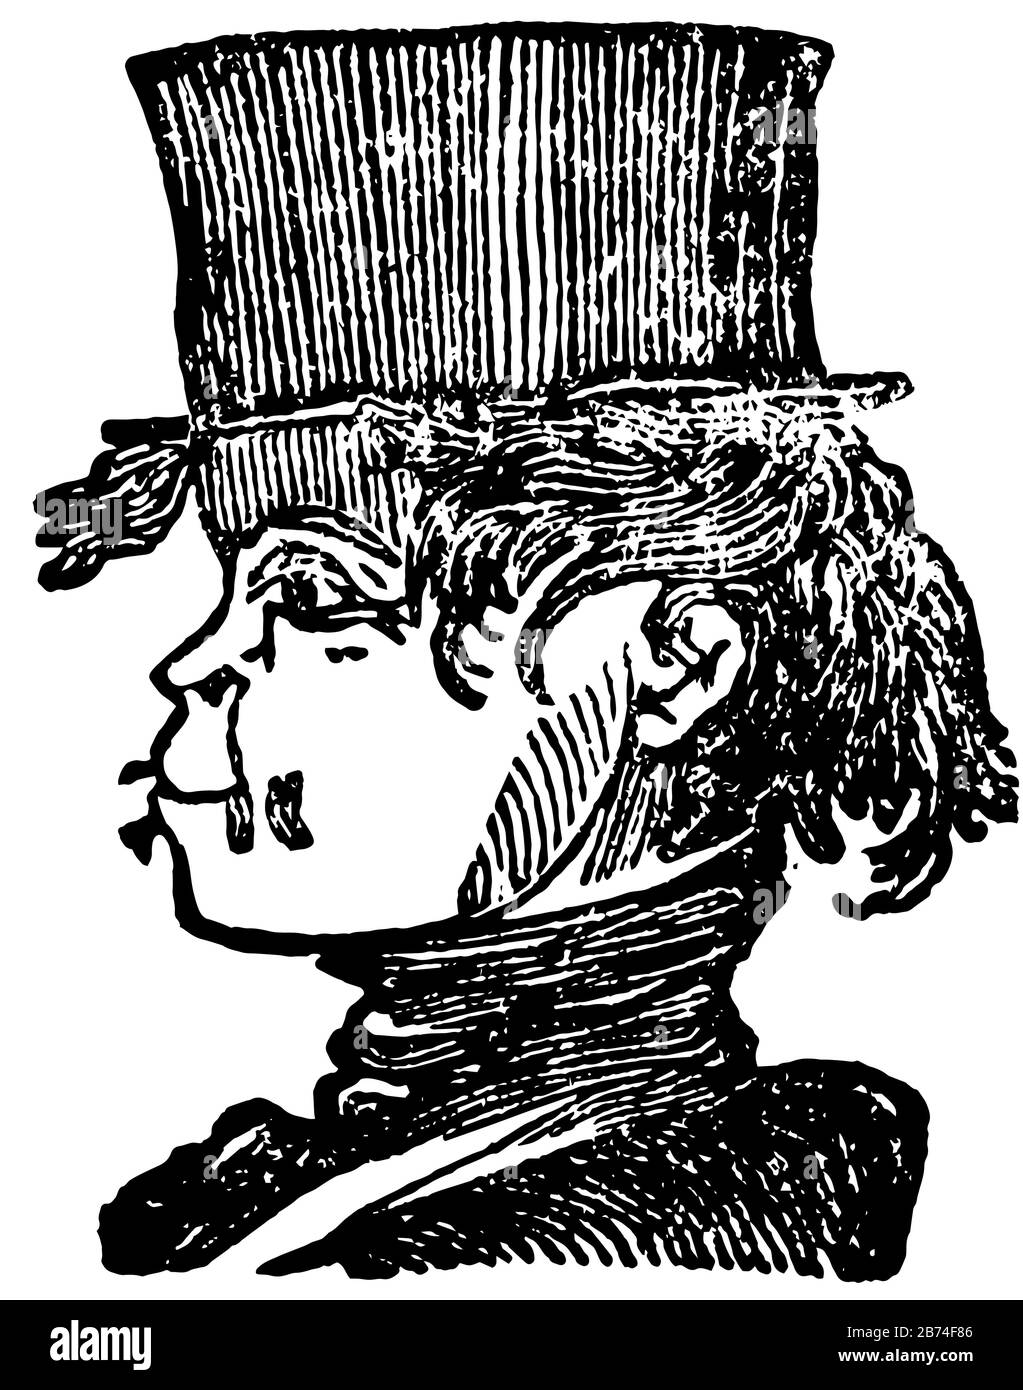 Cara del hombre con sombrero en la cabeza mirando hacia el lado izquierdo, dibujo de línea vintage o ilustración grabada Ilustración del Vector